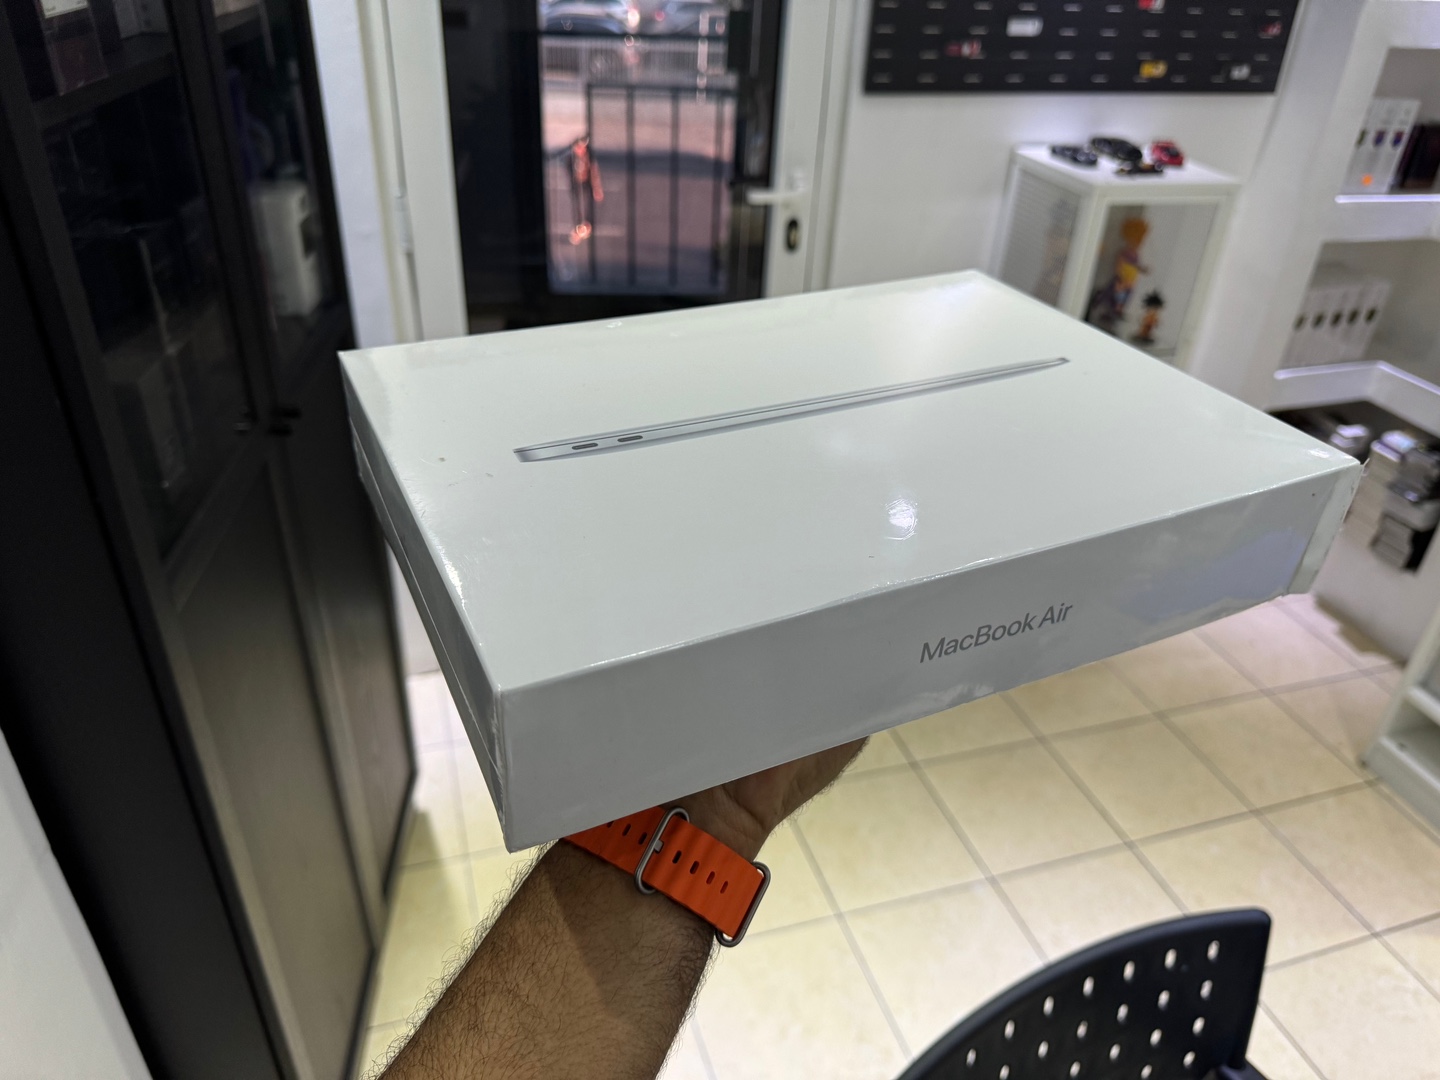 computadoras y laptops - MacBook Air 13.1 INCH  M1 Apple chip | 256GB | 8GB RAM Nuevo Sellado $ 45,900 NE 0